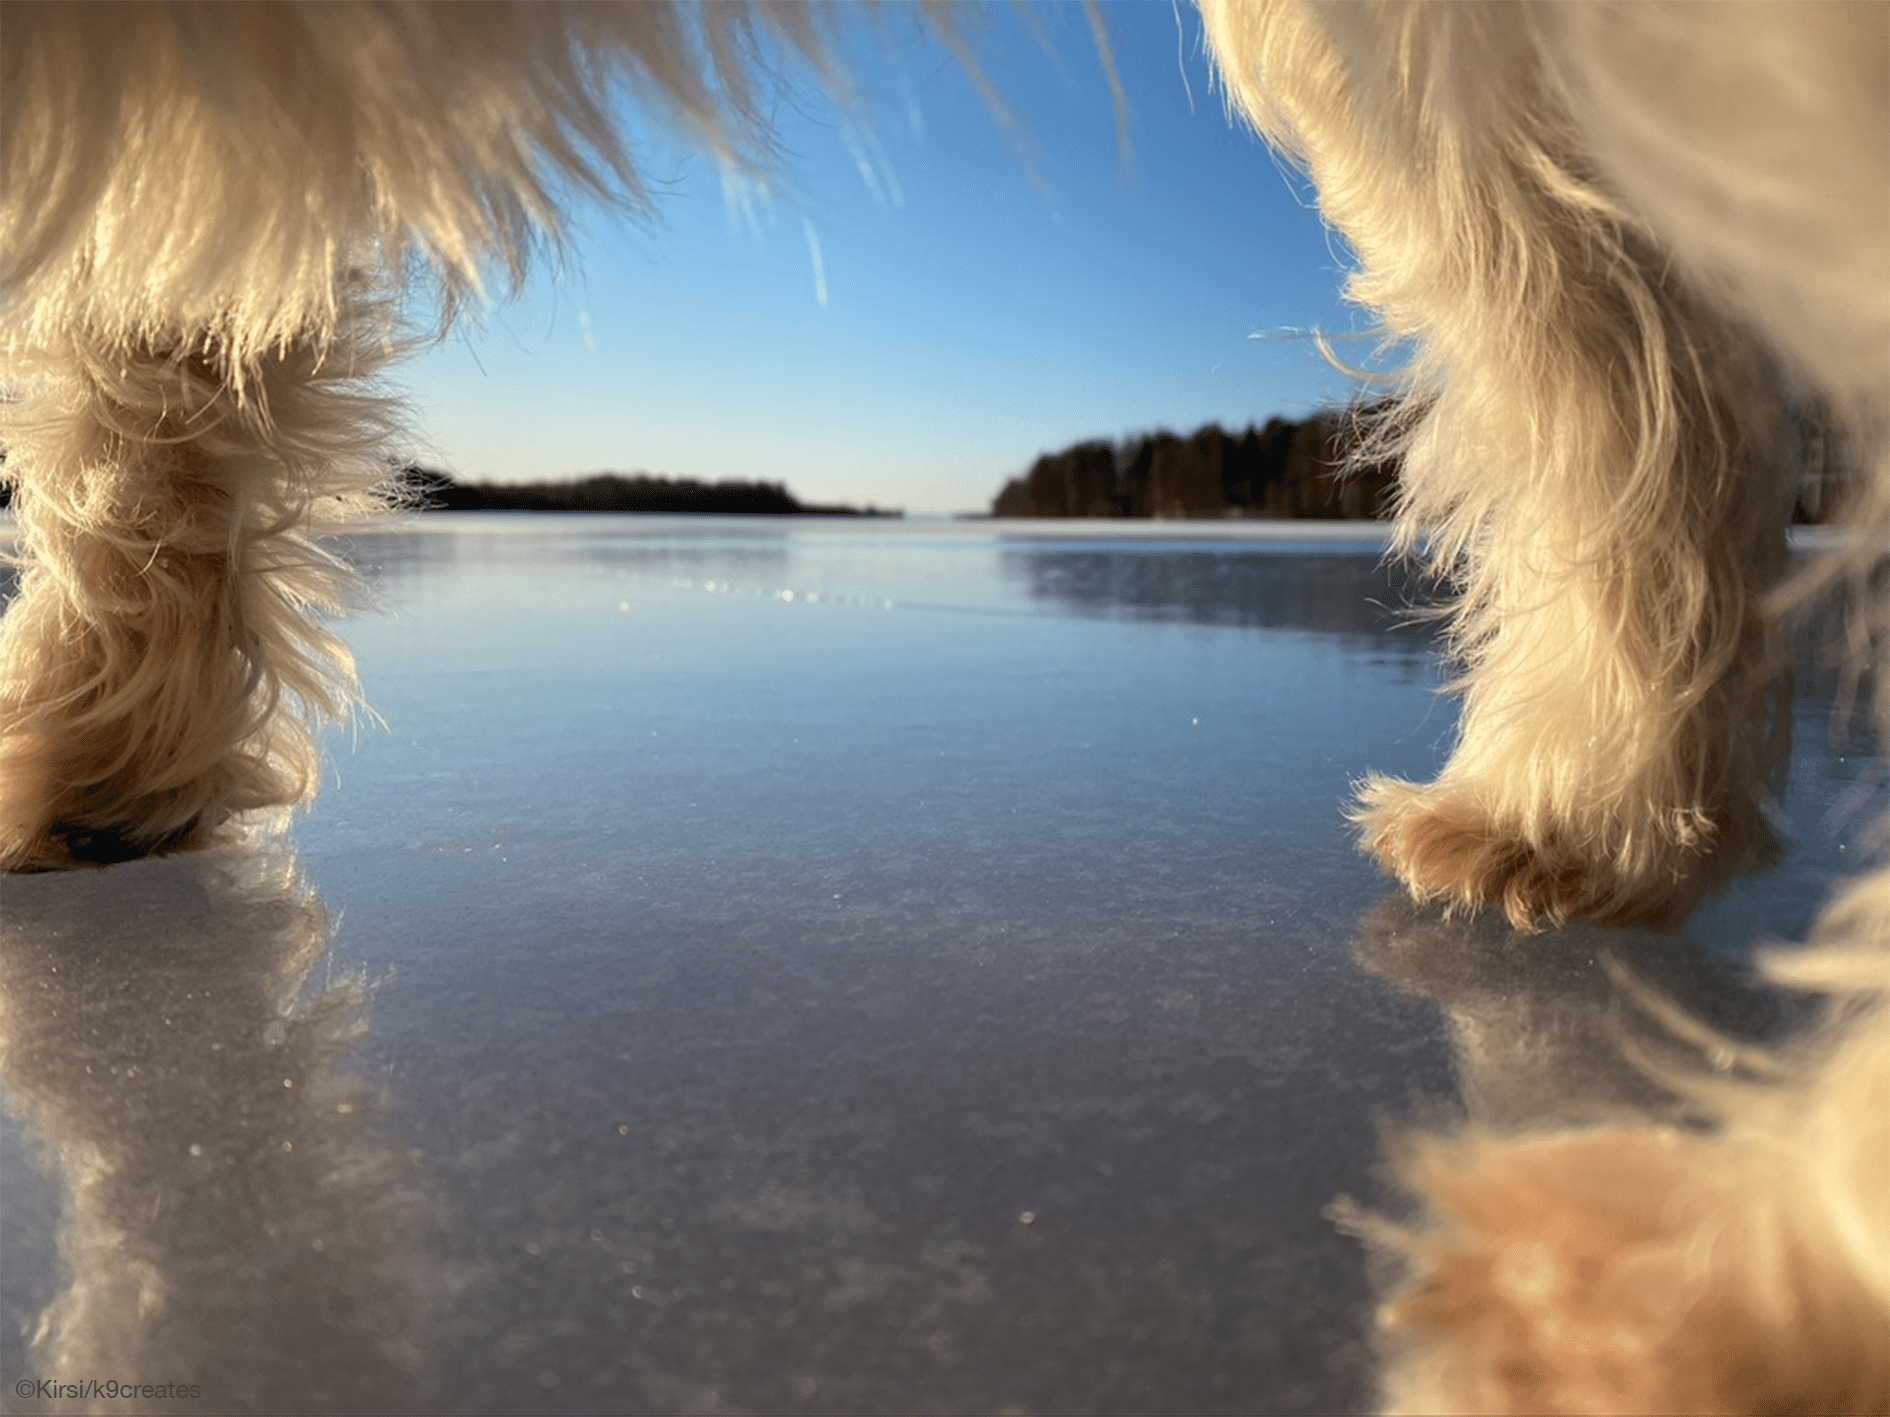 jäätynyt järvimaisema, kuvaa otettu valkean koiran vatsan alta, jolloin jalat ja vatsa rajaavat kuvan.